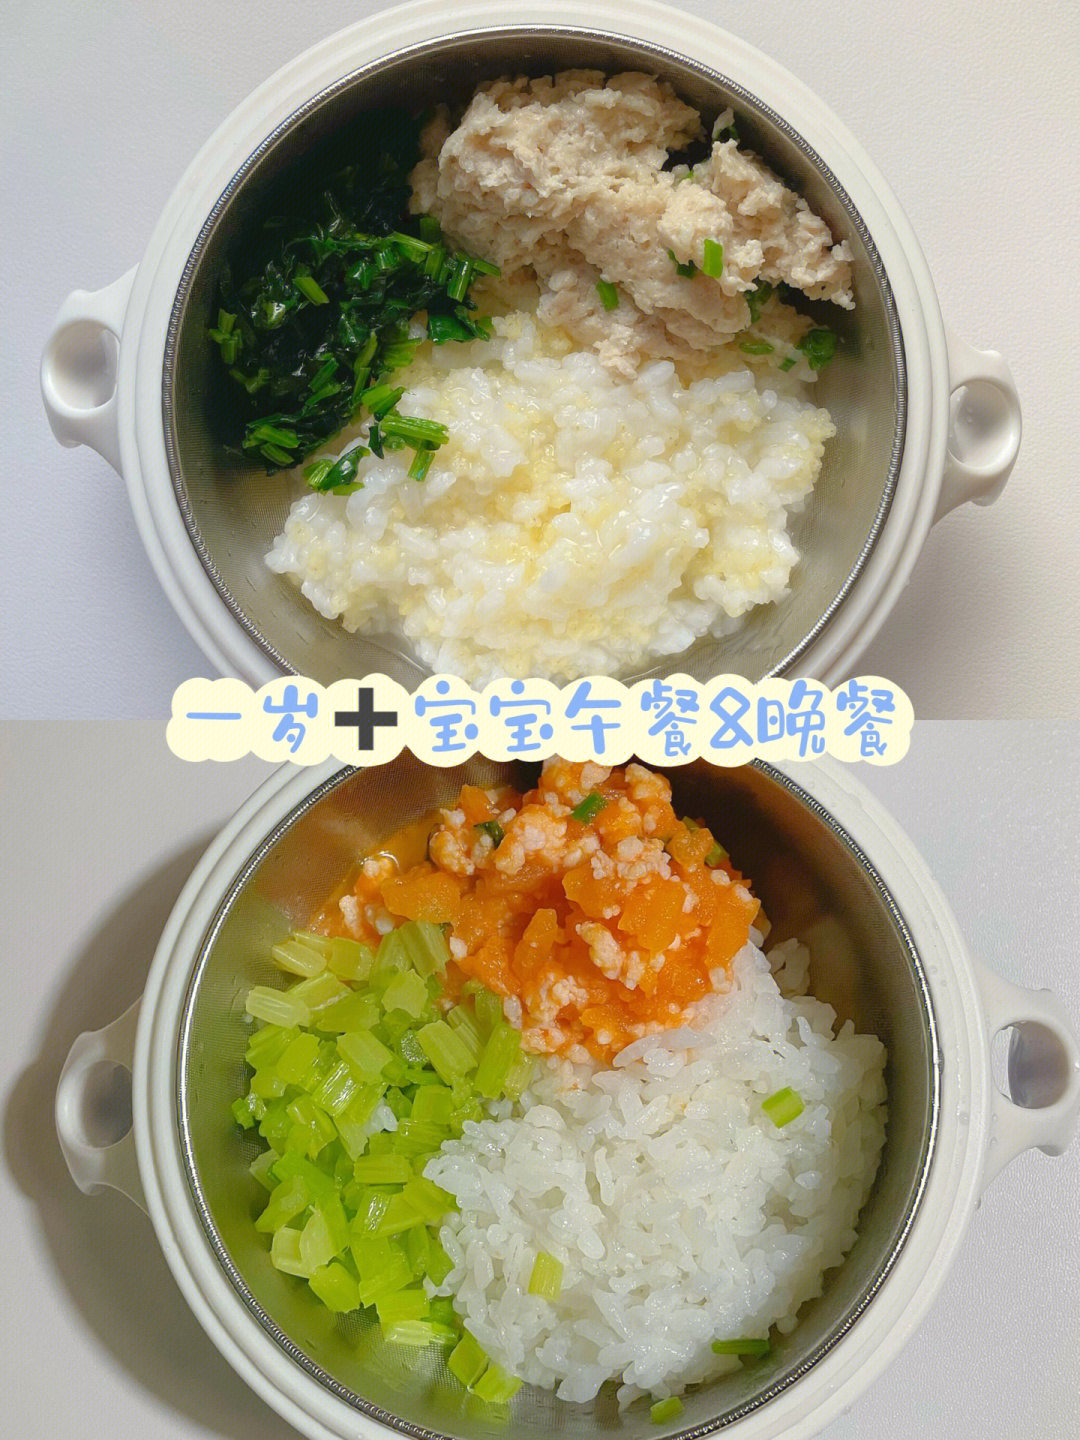 (吃了半个)燕麦小米糊午餐:双米粥  山药蒸肉饼 清炒菠菜晚餐:米饭